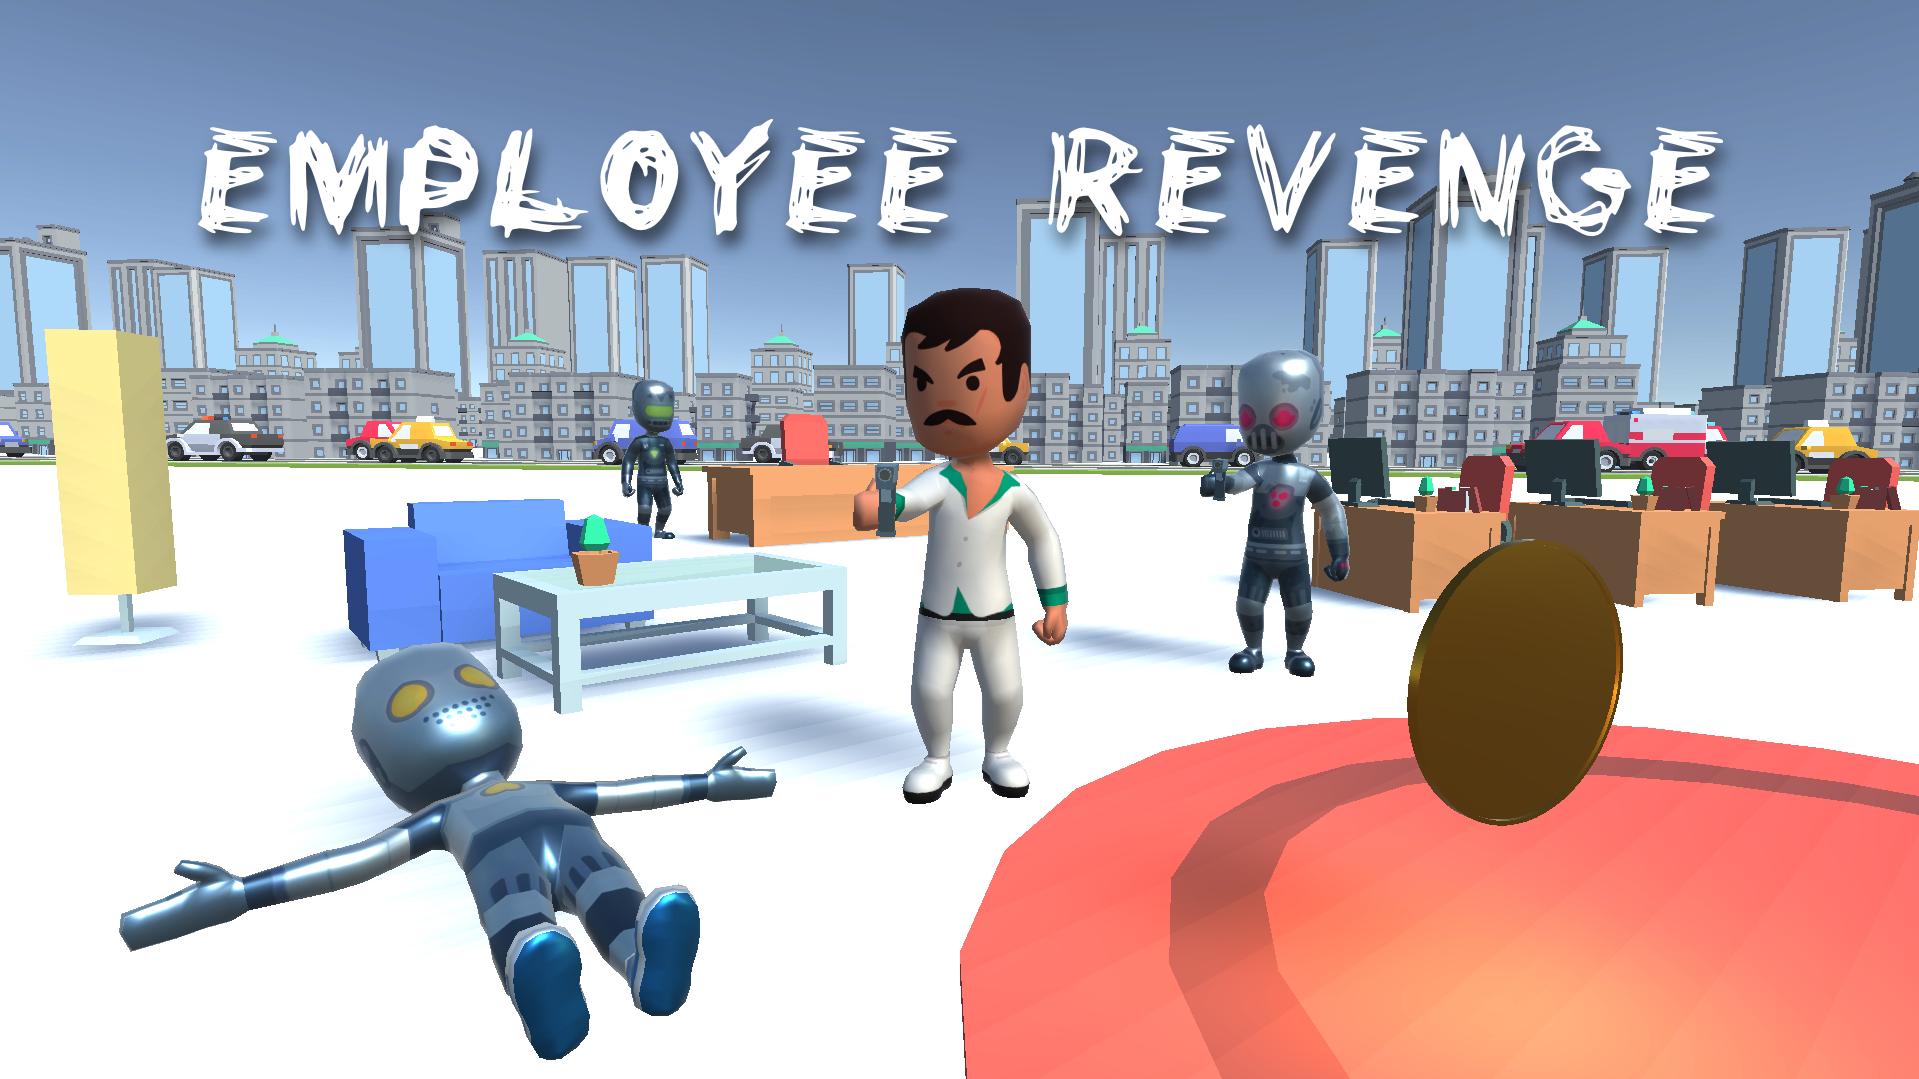 Employee Revenge